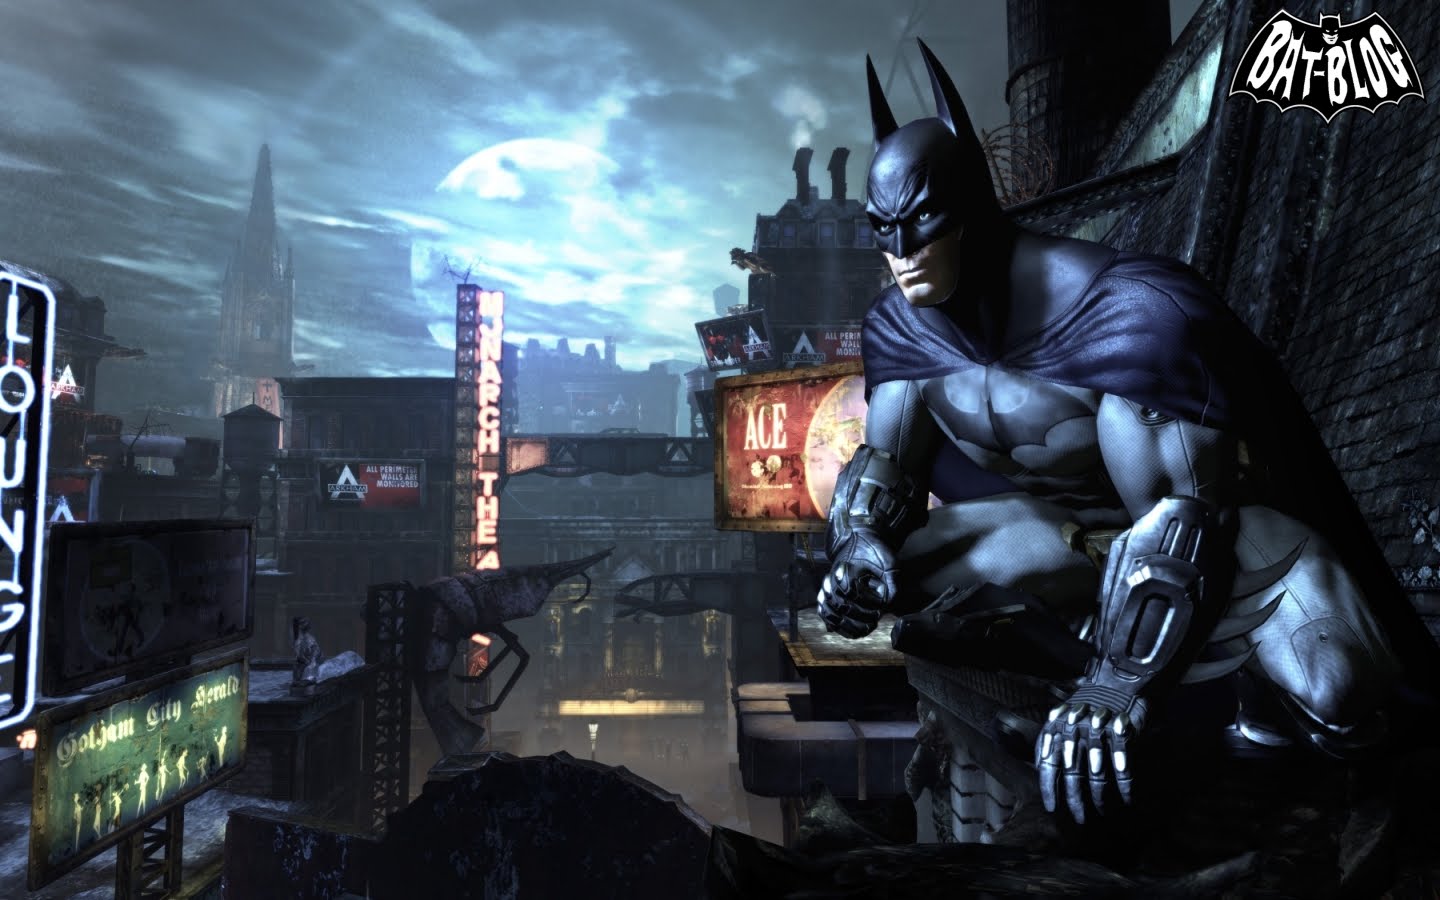 New Batman Arkham City Wallpaper Made From Video Game Screenshots